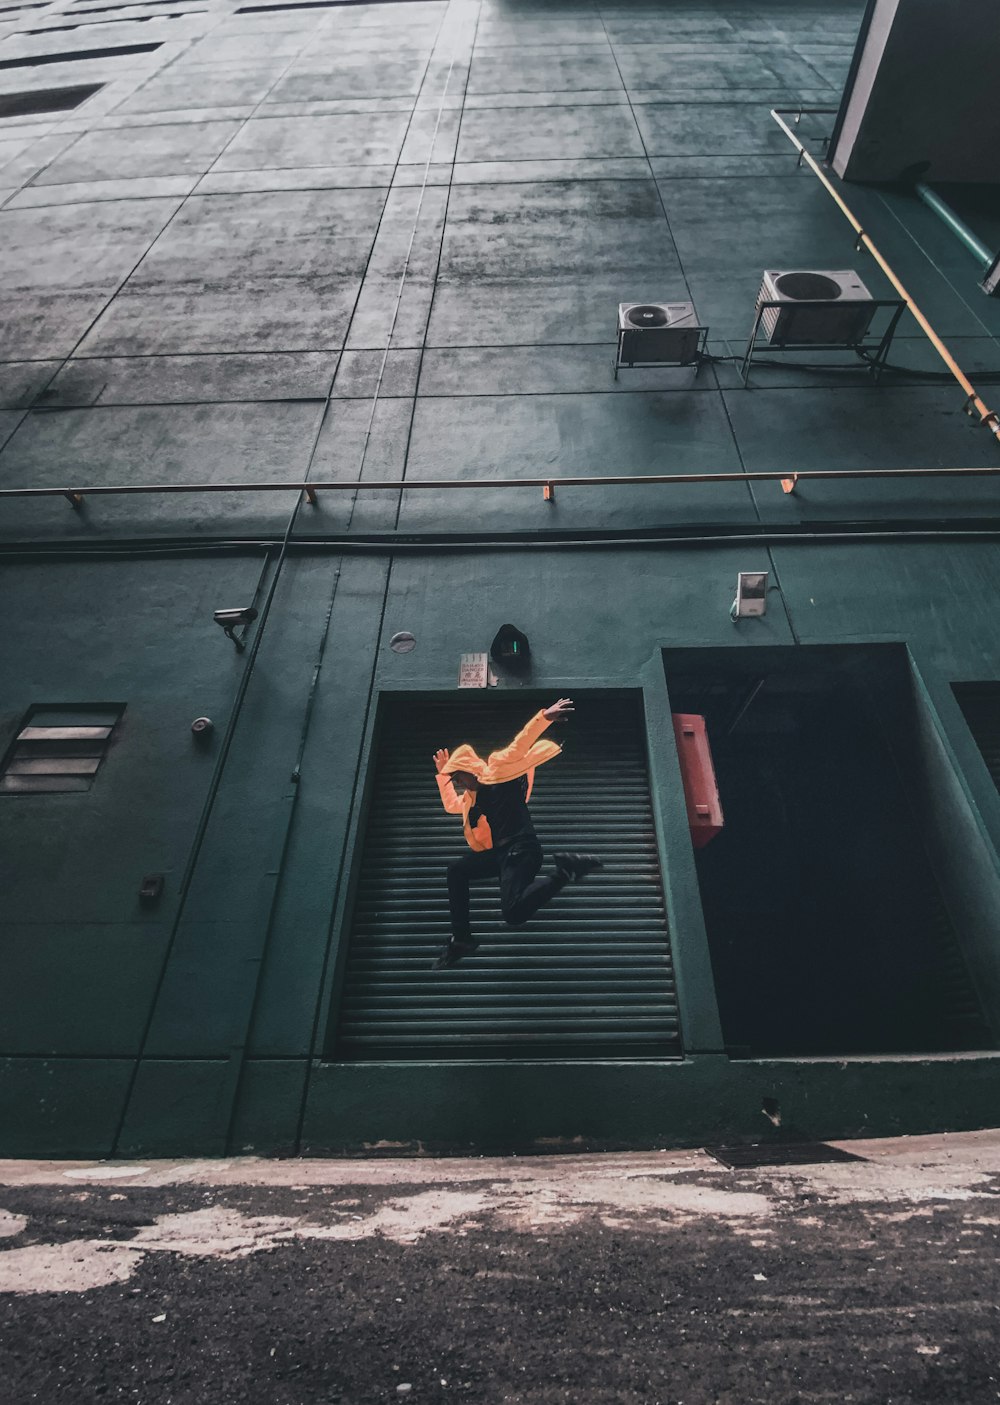 Photographie timelapse d’une personne sautant près d’un bâtiment